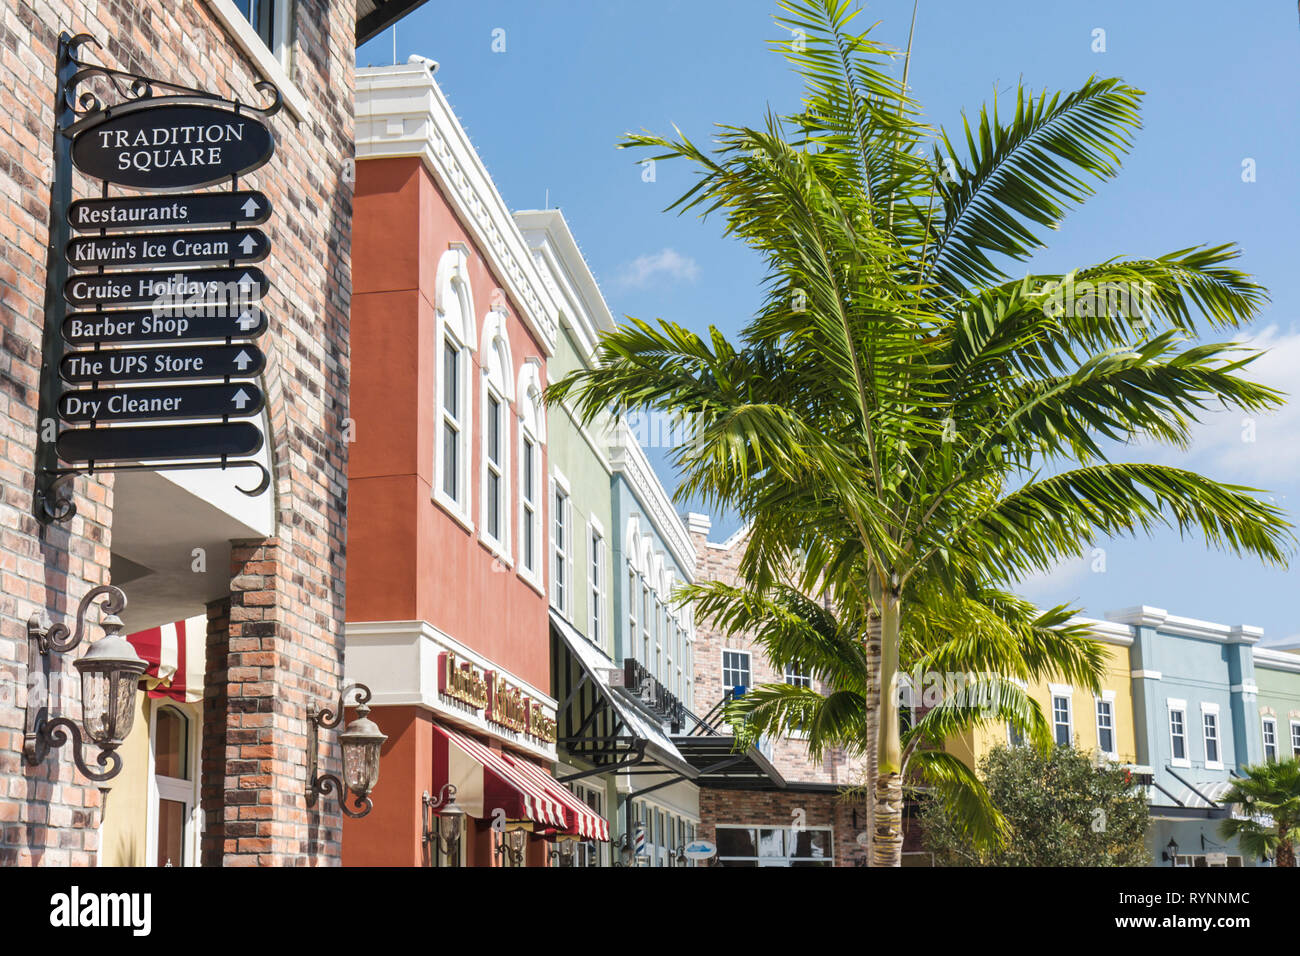 Port St. Sainte Lucie Florida,Tradition,communauté planifiée,développement immobilier,en construction de nouveaux chantiers,T Banque D'Images